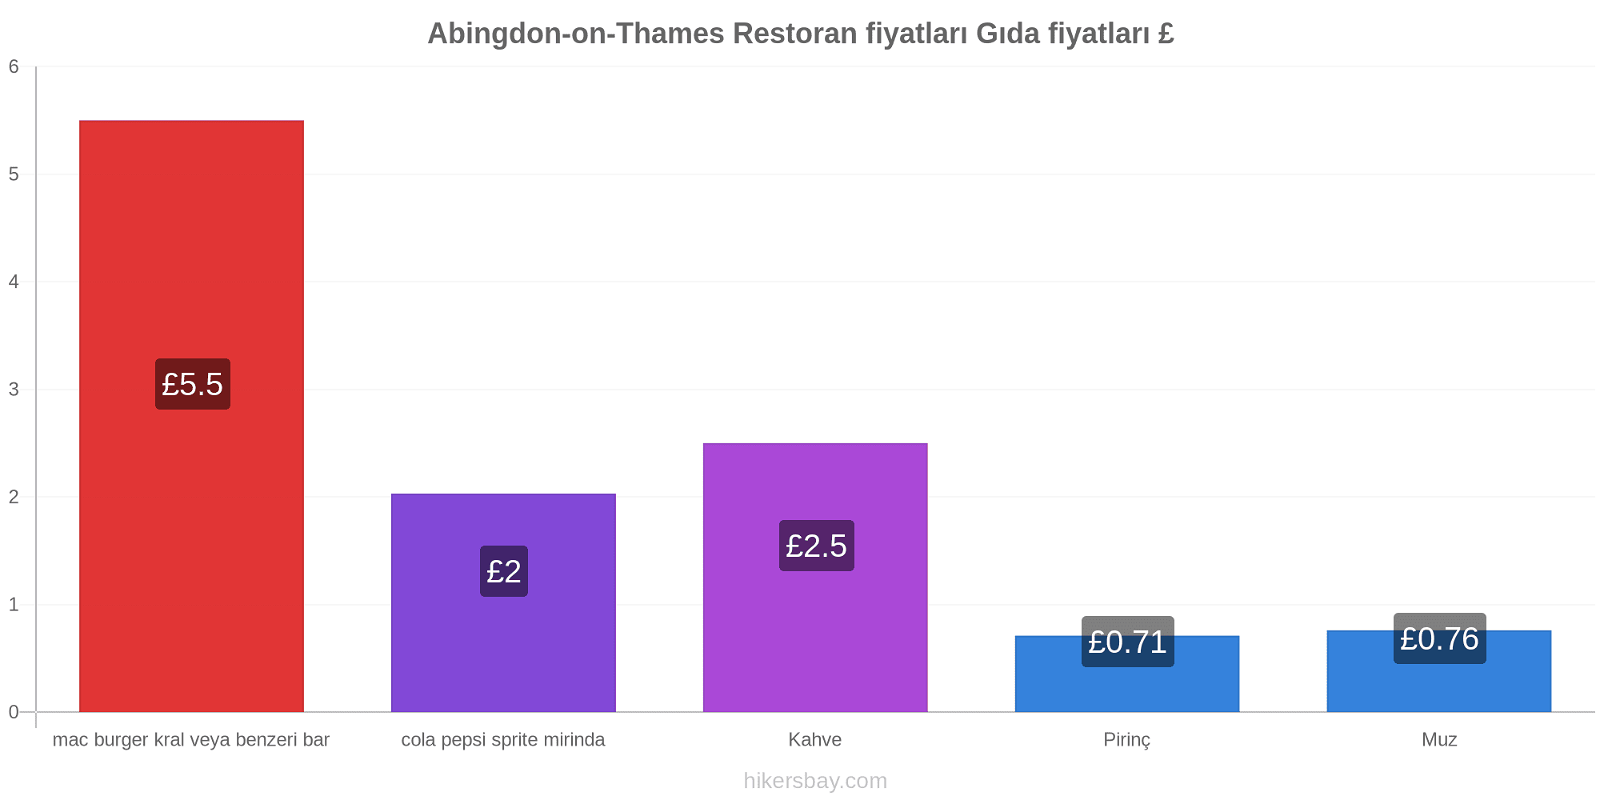 Abingdon-on-Thames fiyat değişiklikleri hikersbay.com